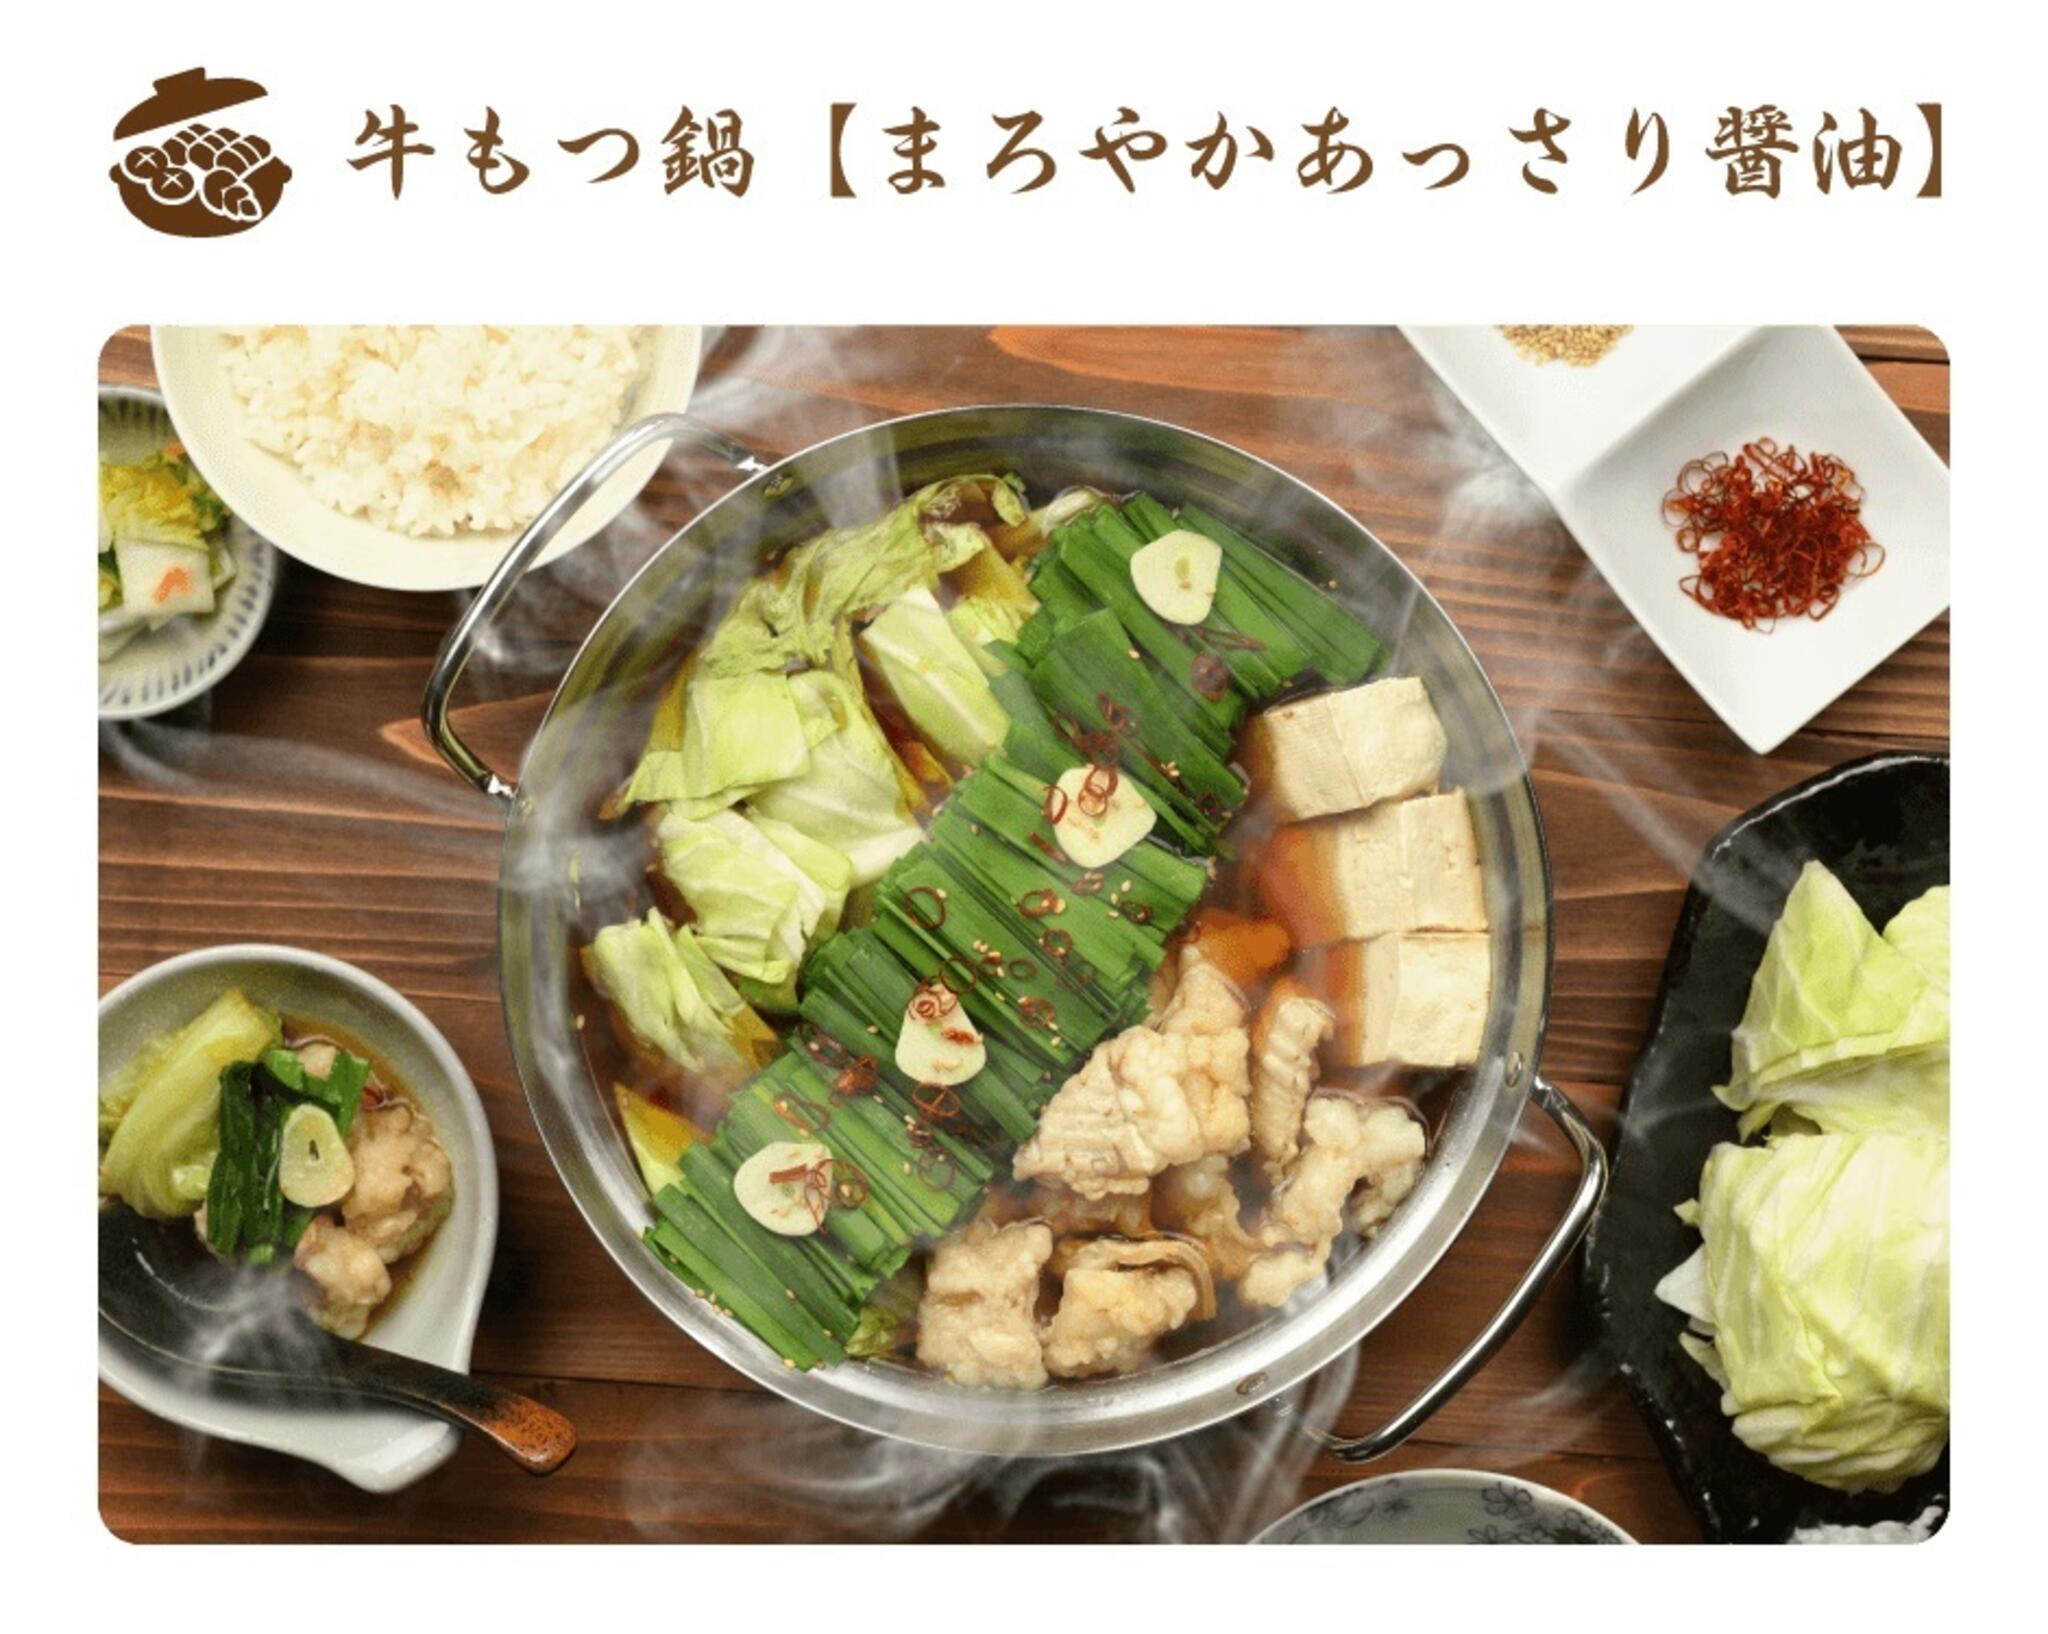 焼肉冷麺やまなか家 西多賀店からのお知らせ(🍲やまなか家通販限定❕鍋特集🍲)に関する写真